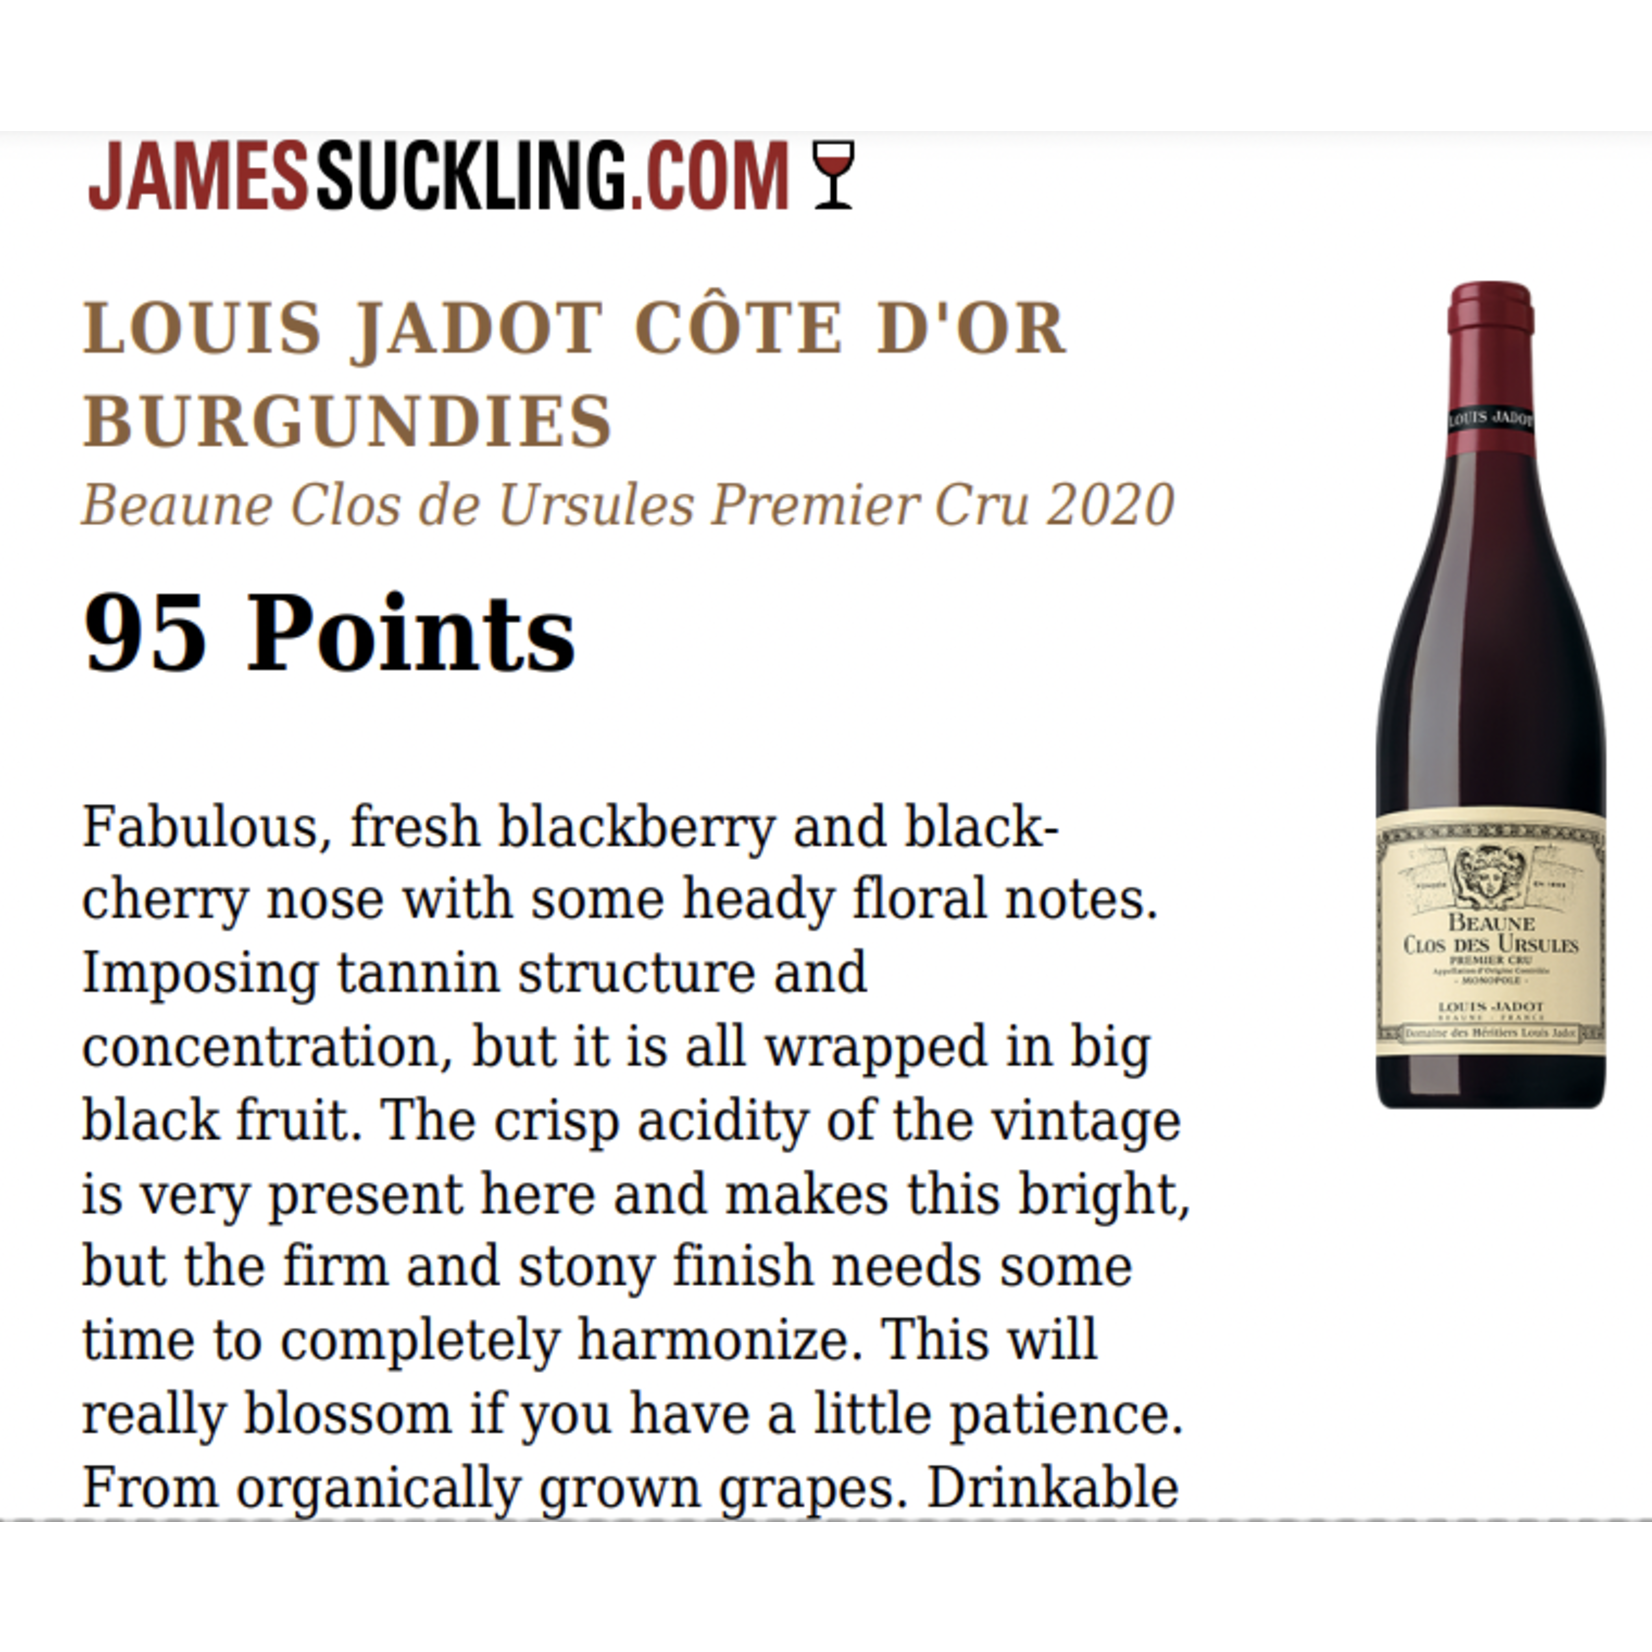 Wine Louis Jadot Beaune Clos des Ursules Monopole Premier Cru Domaine des Heritiers 2020